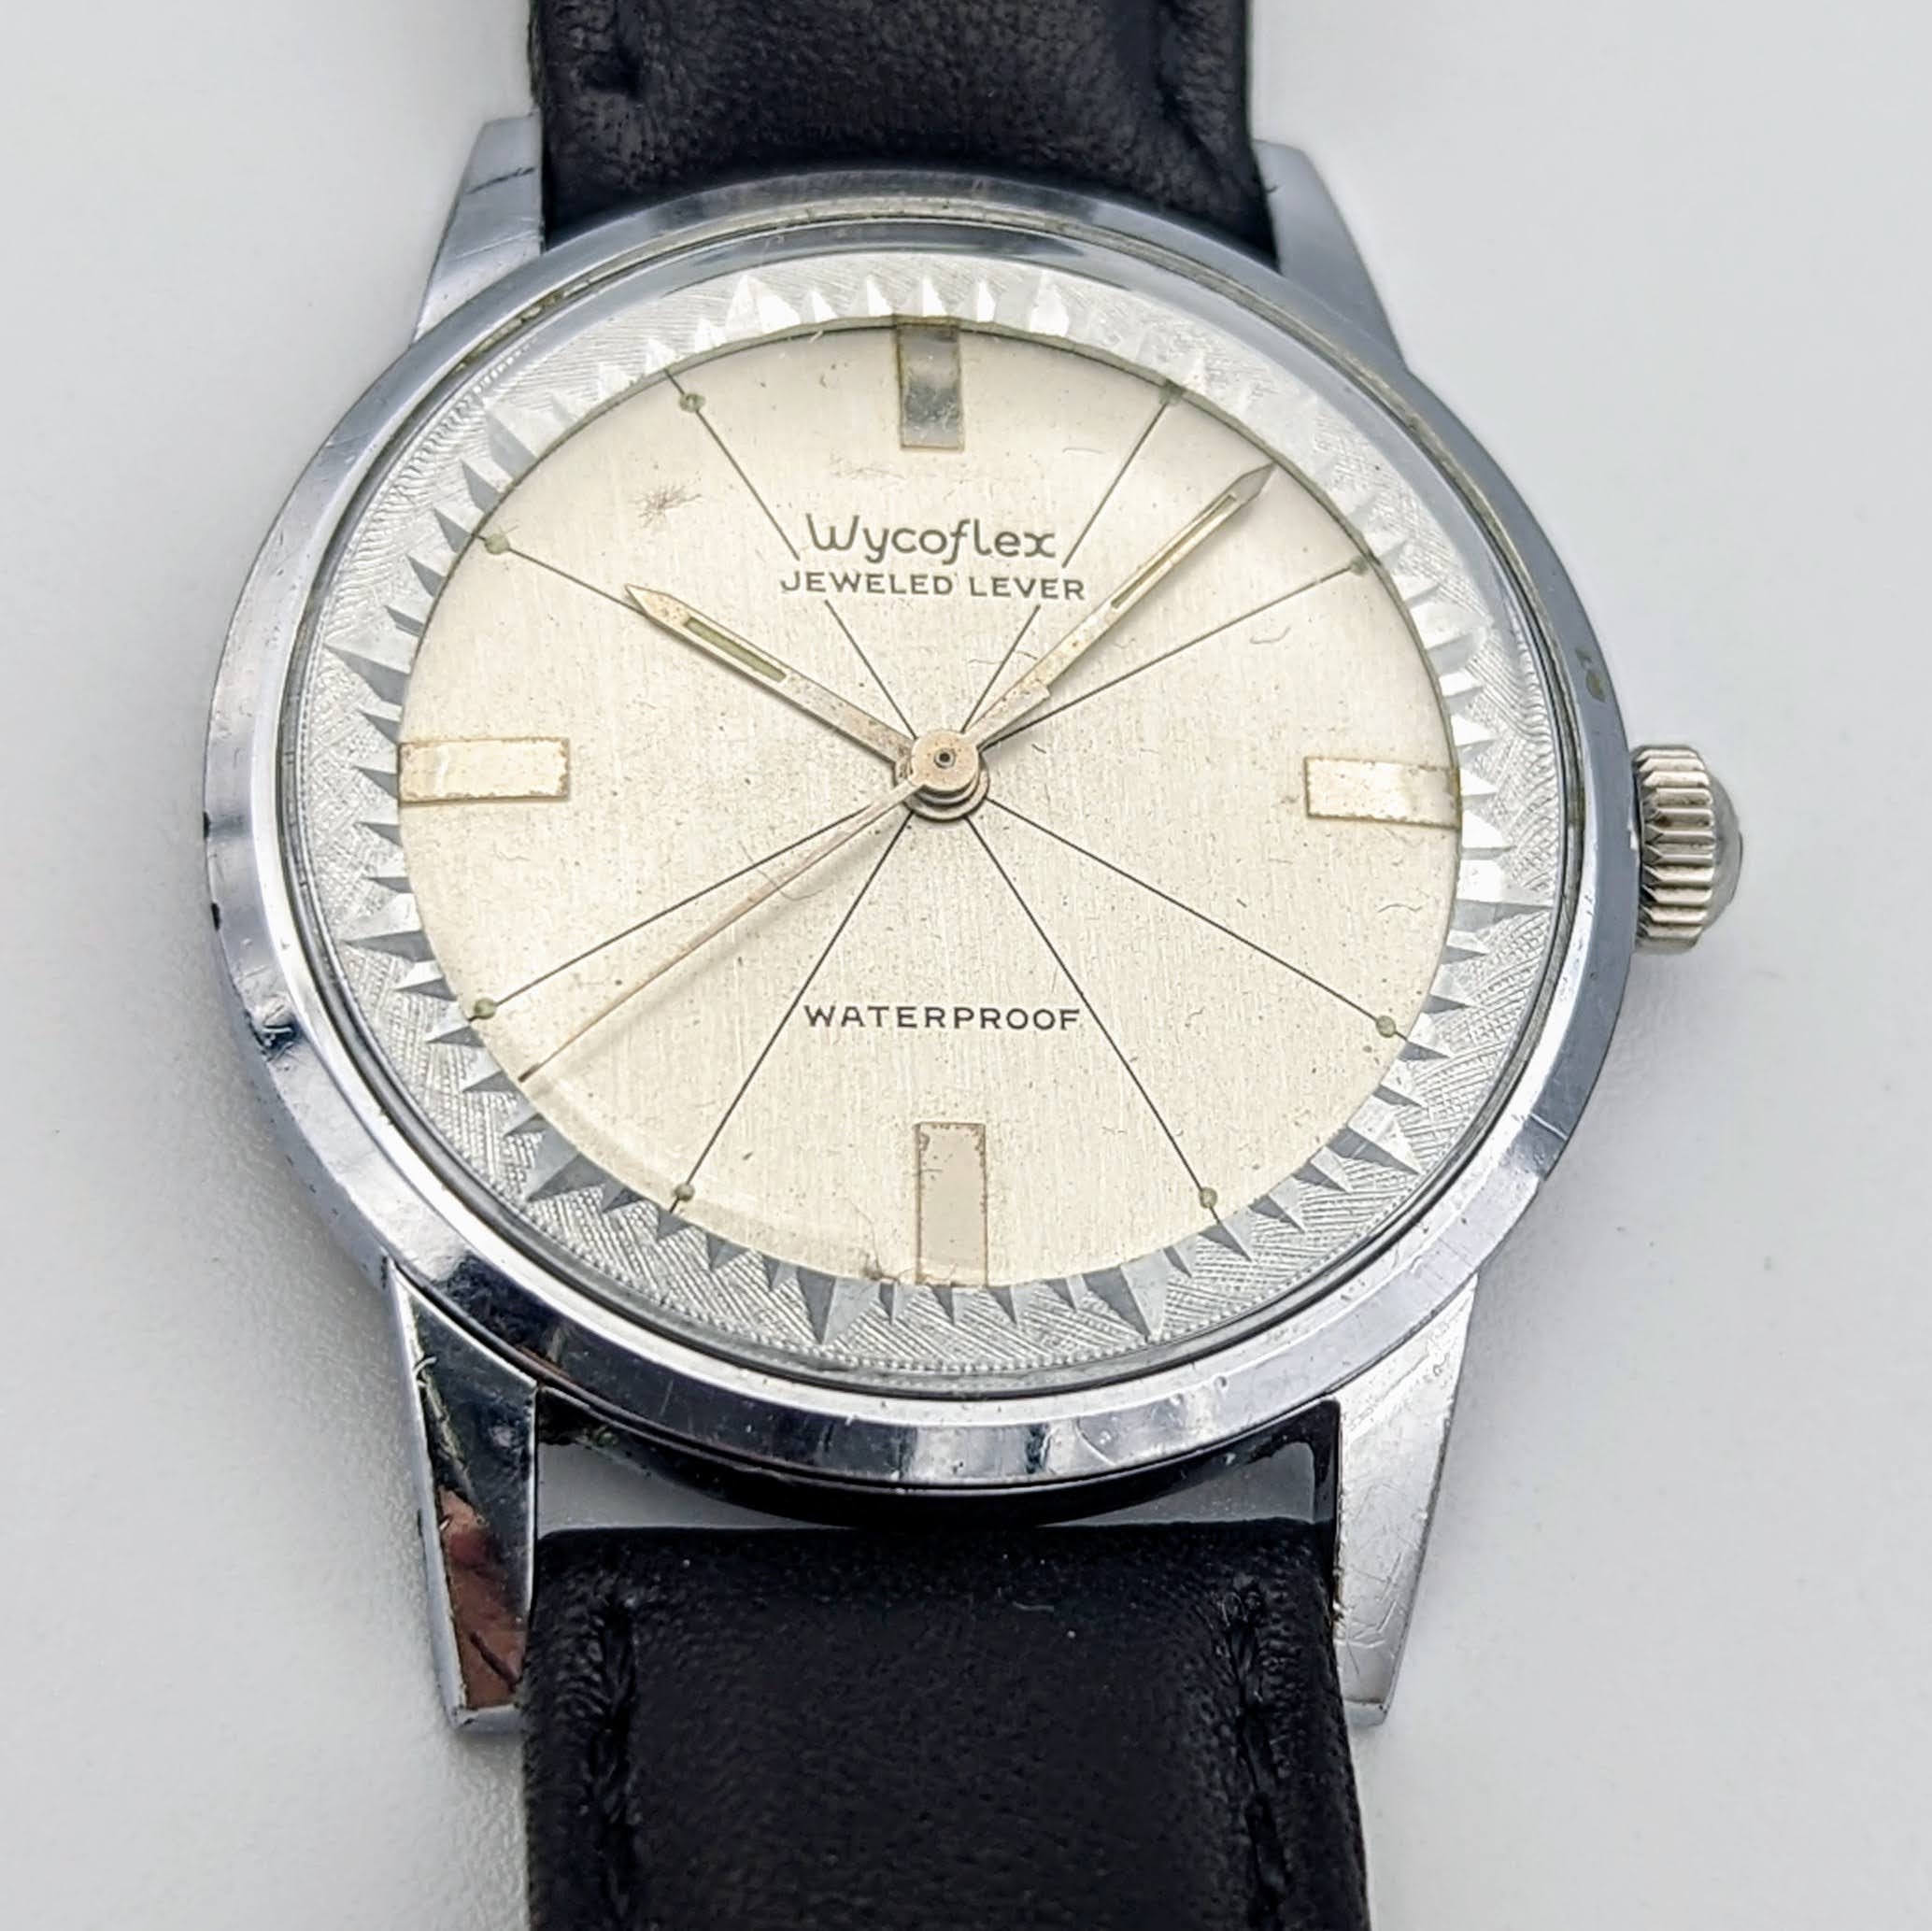 WYCOFLEX by WYLER Wristwatch Caliber WH 314 7J Vintage Watch – SECOND ...